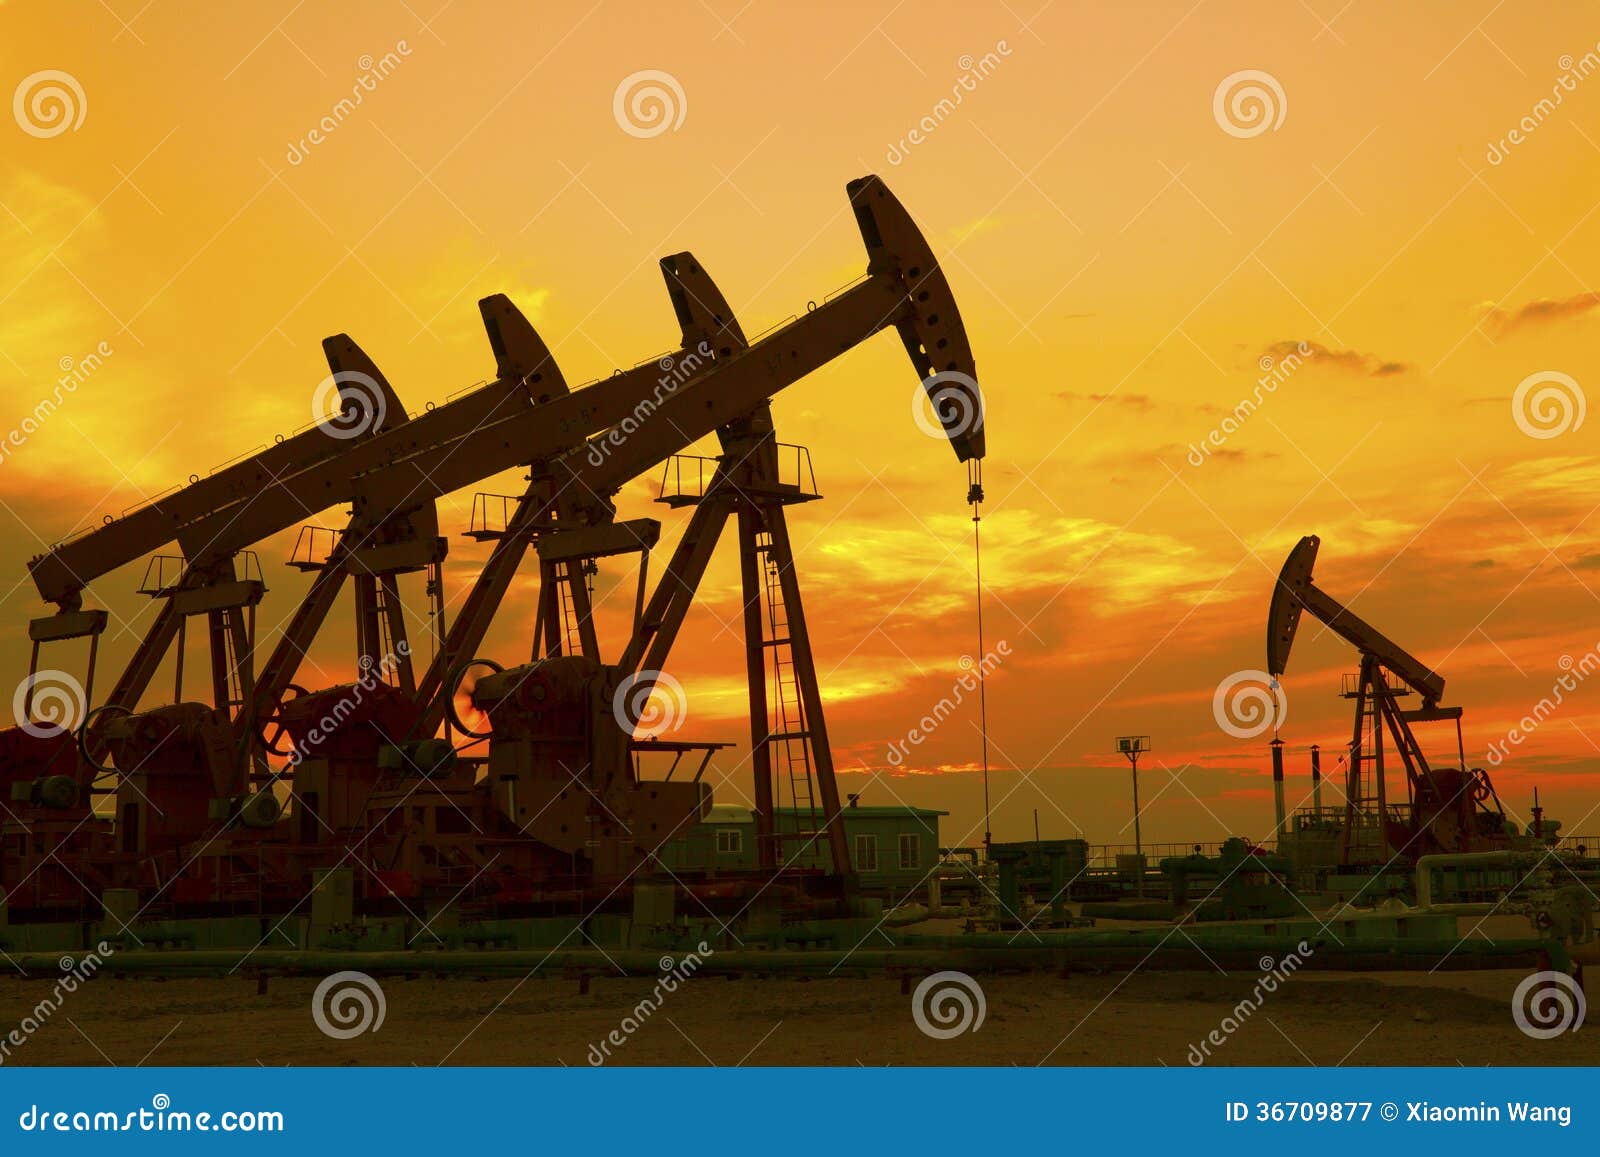 oil pumps.